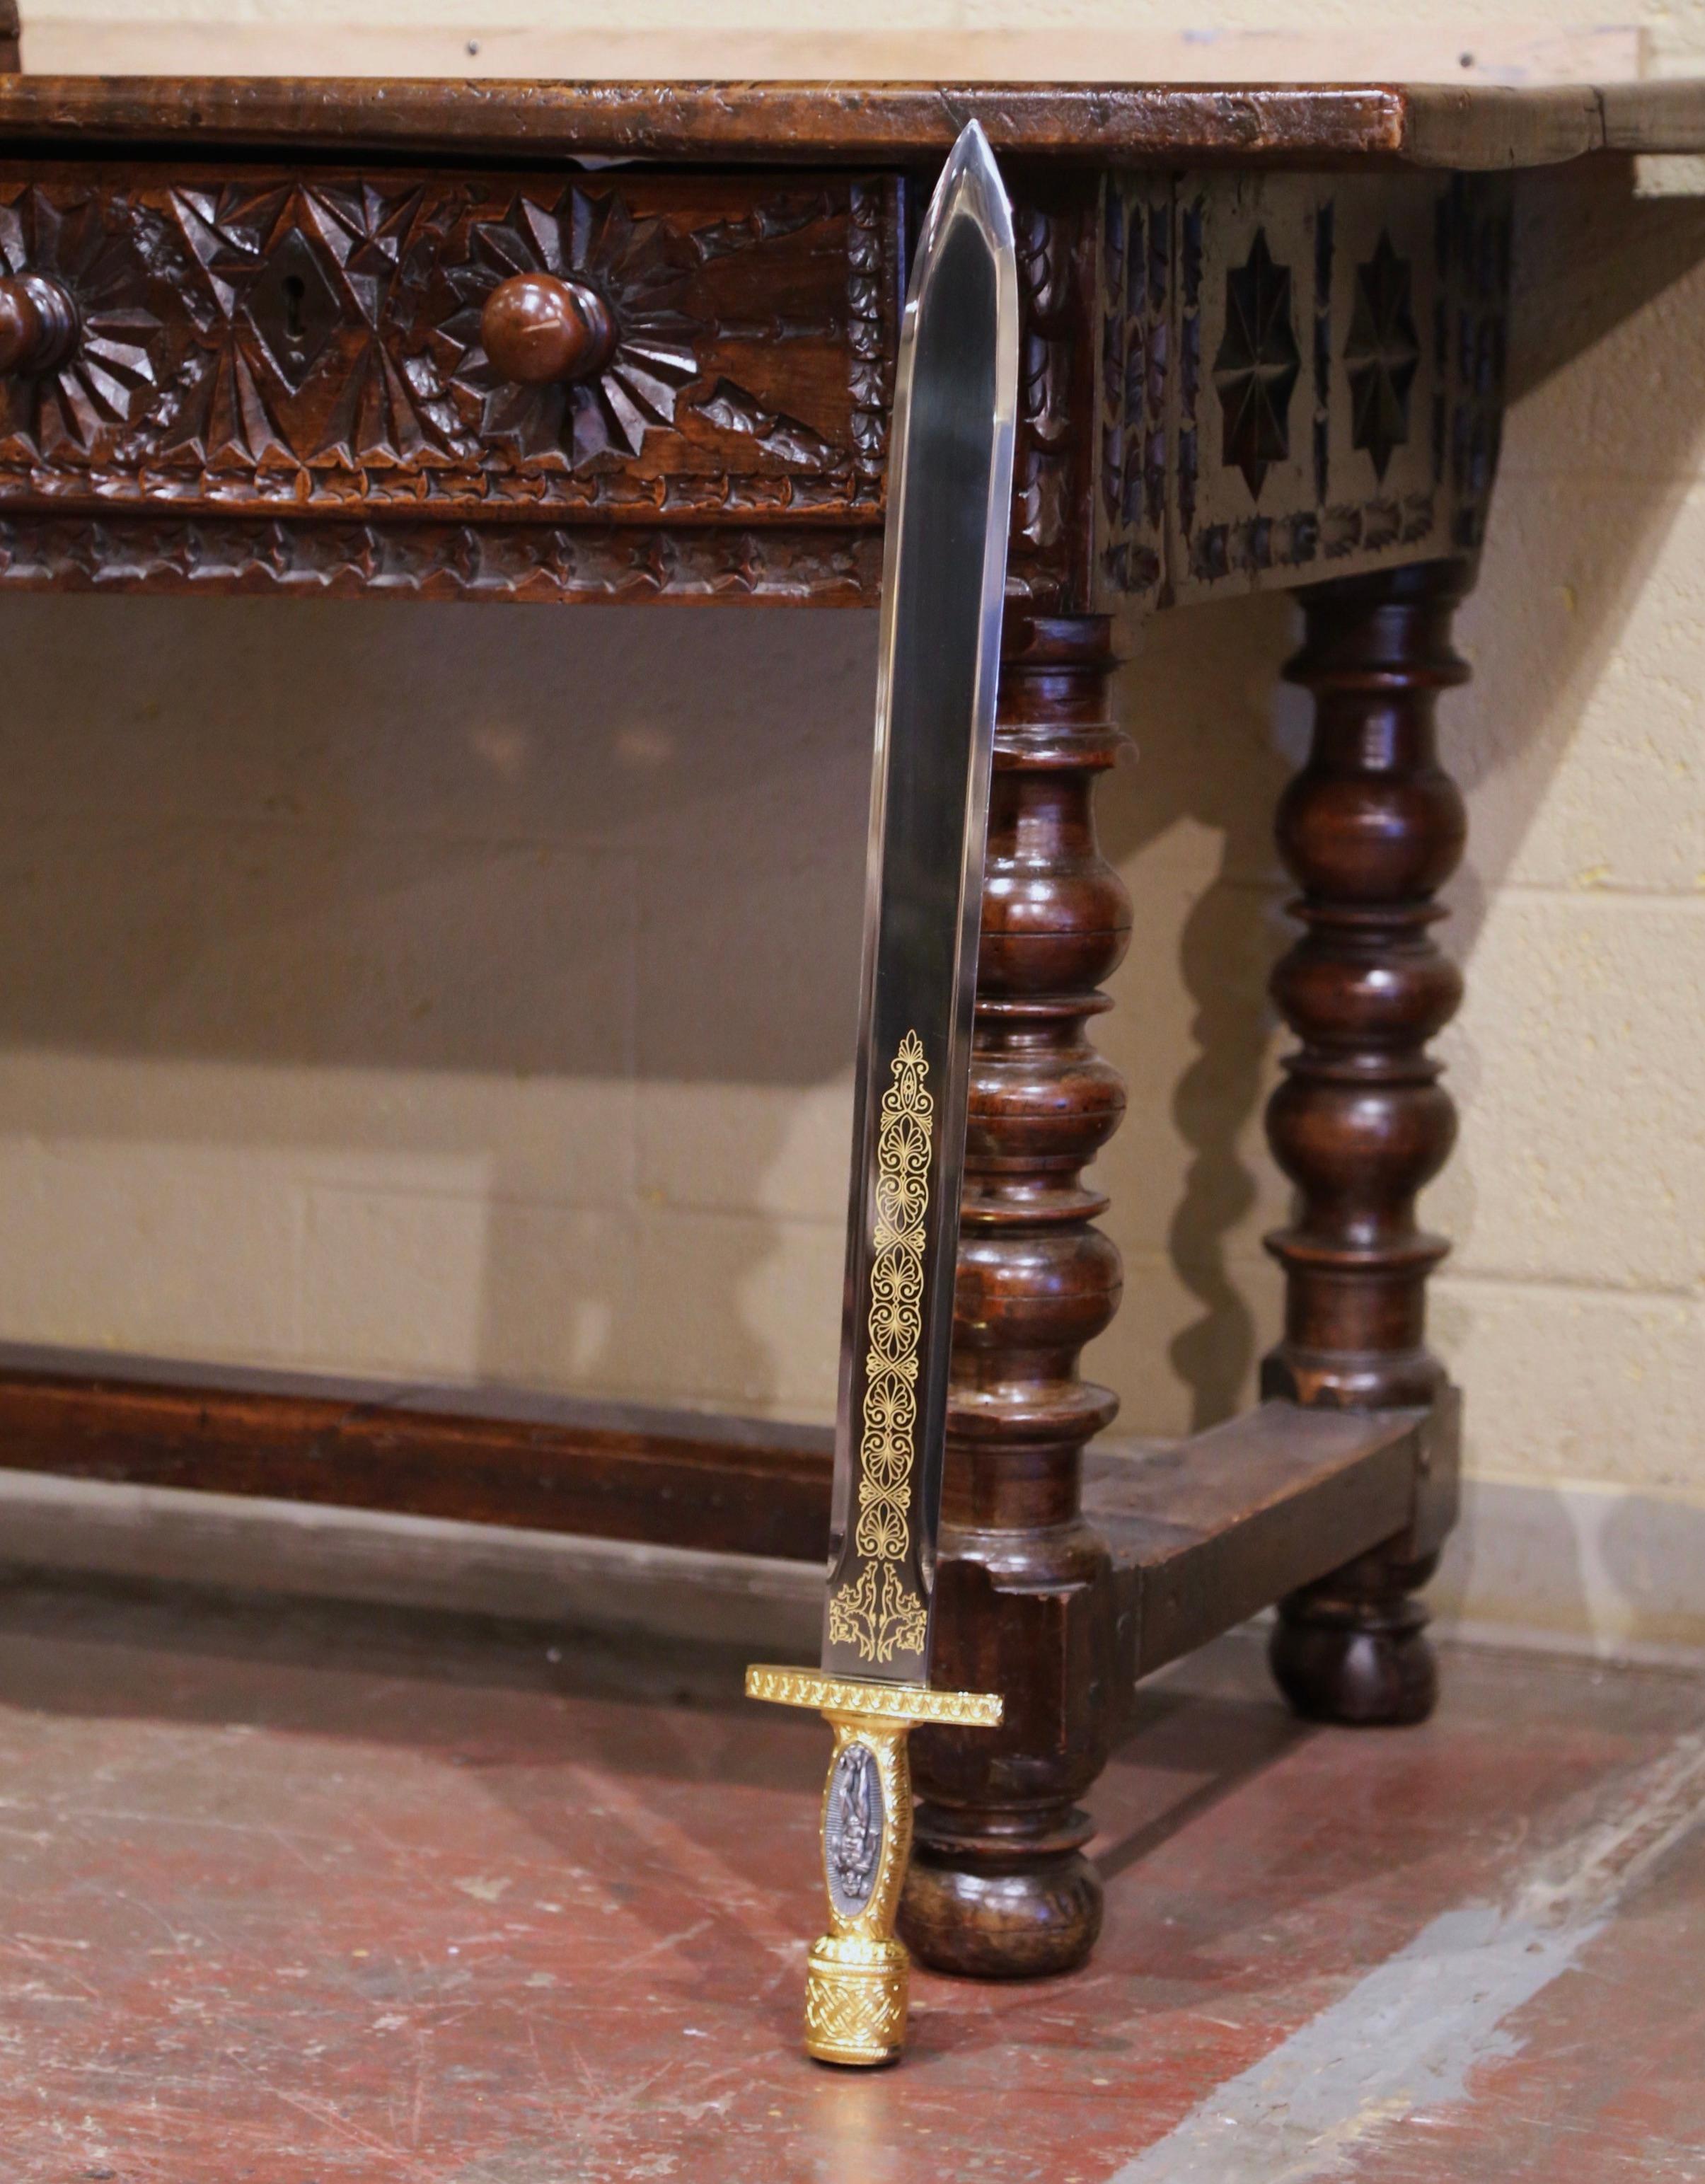 Die antike Klinge im klassischen Xiphos-Stil wurde um das Jahr 2000 in Griechenland hergestellt. Das Schwert aus der alten Welt hat eine zweischneidige Klinge mit zwei Greifen und aufwändigen Motiven auf beiden Seiten. Der Griff zeigt eine